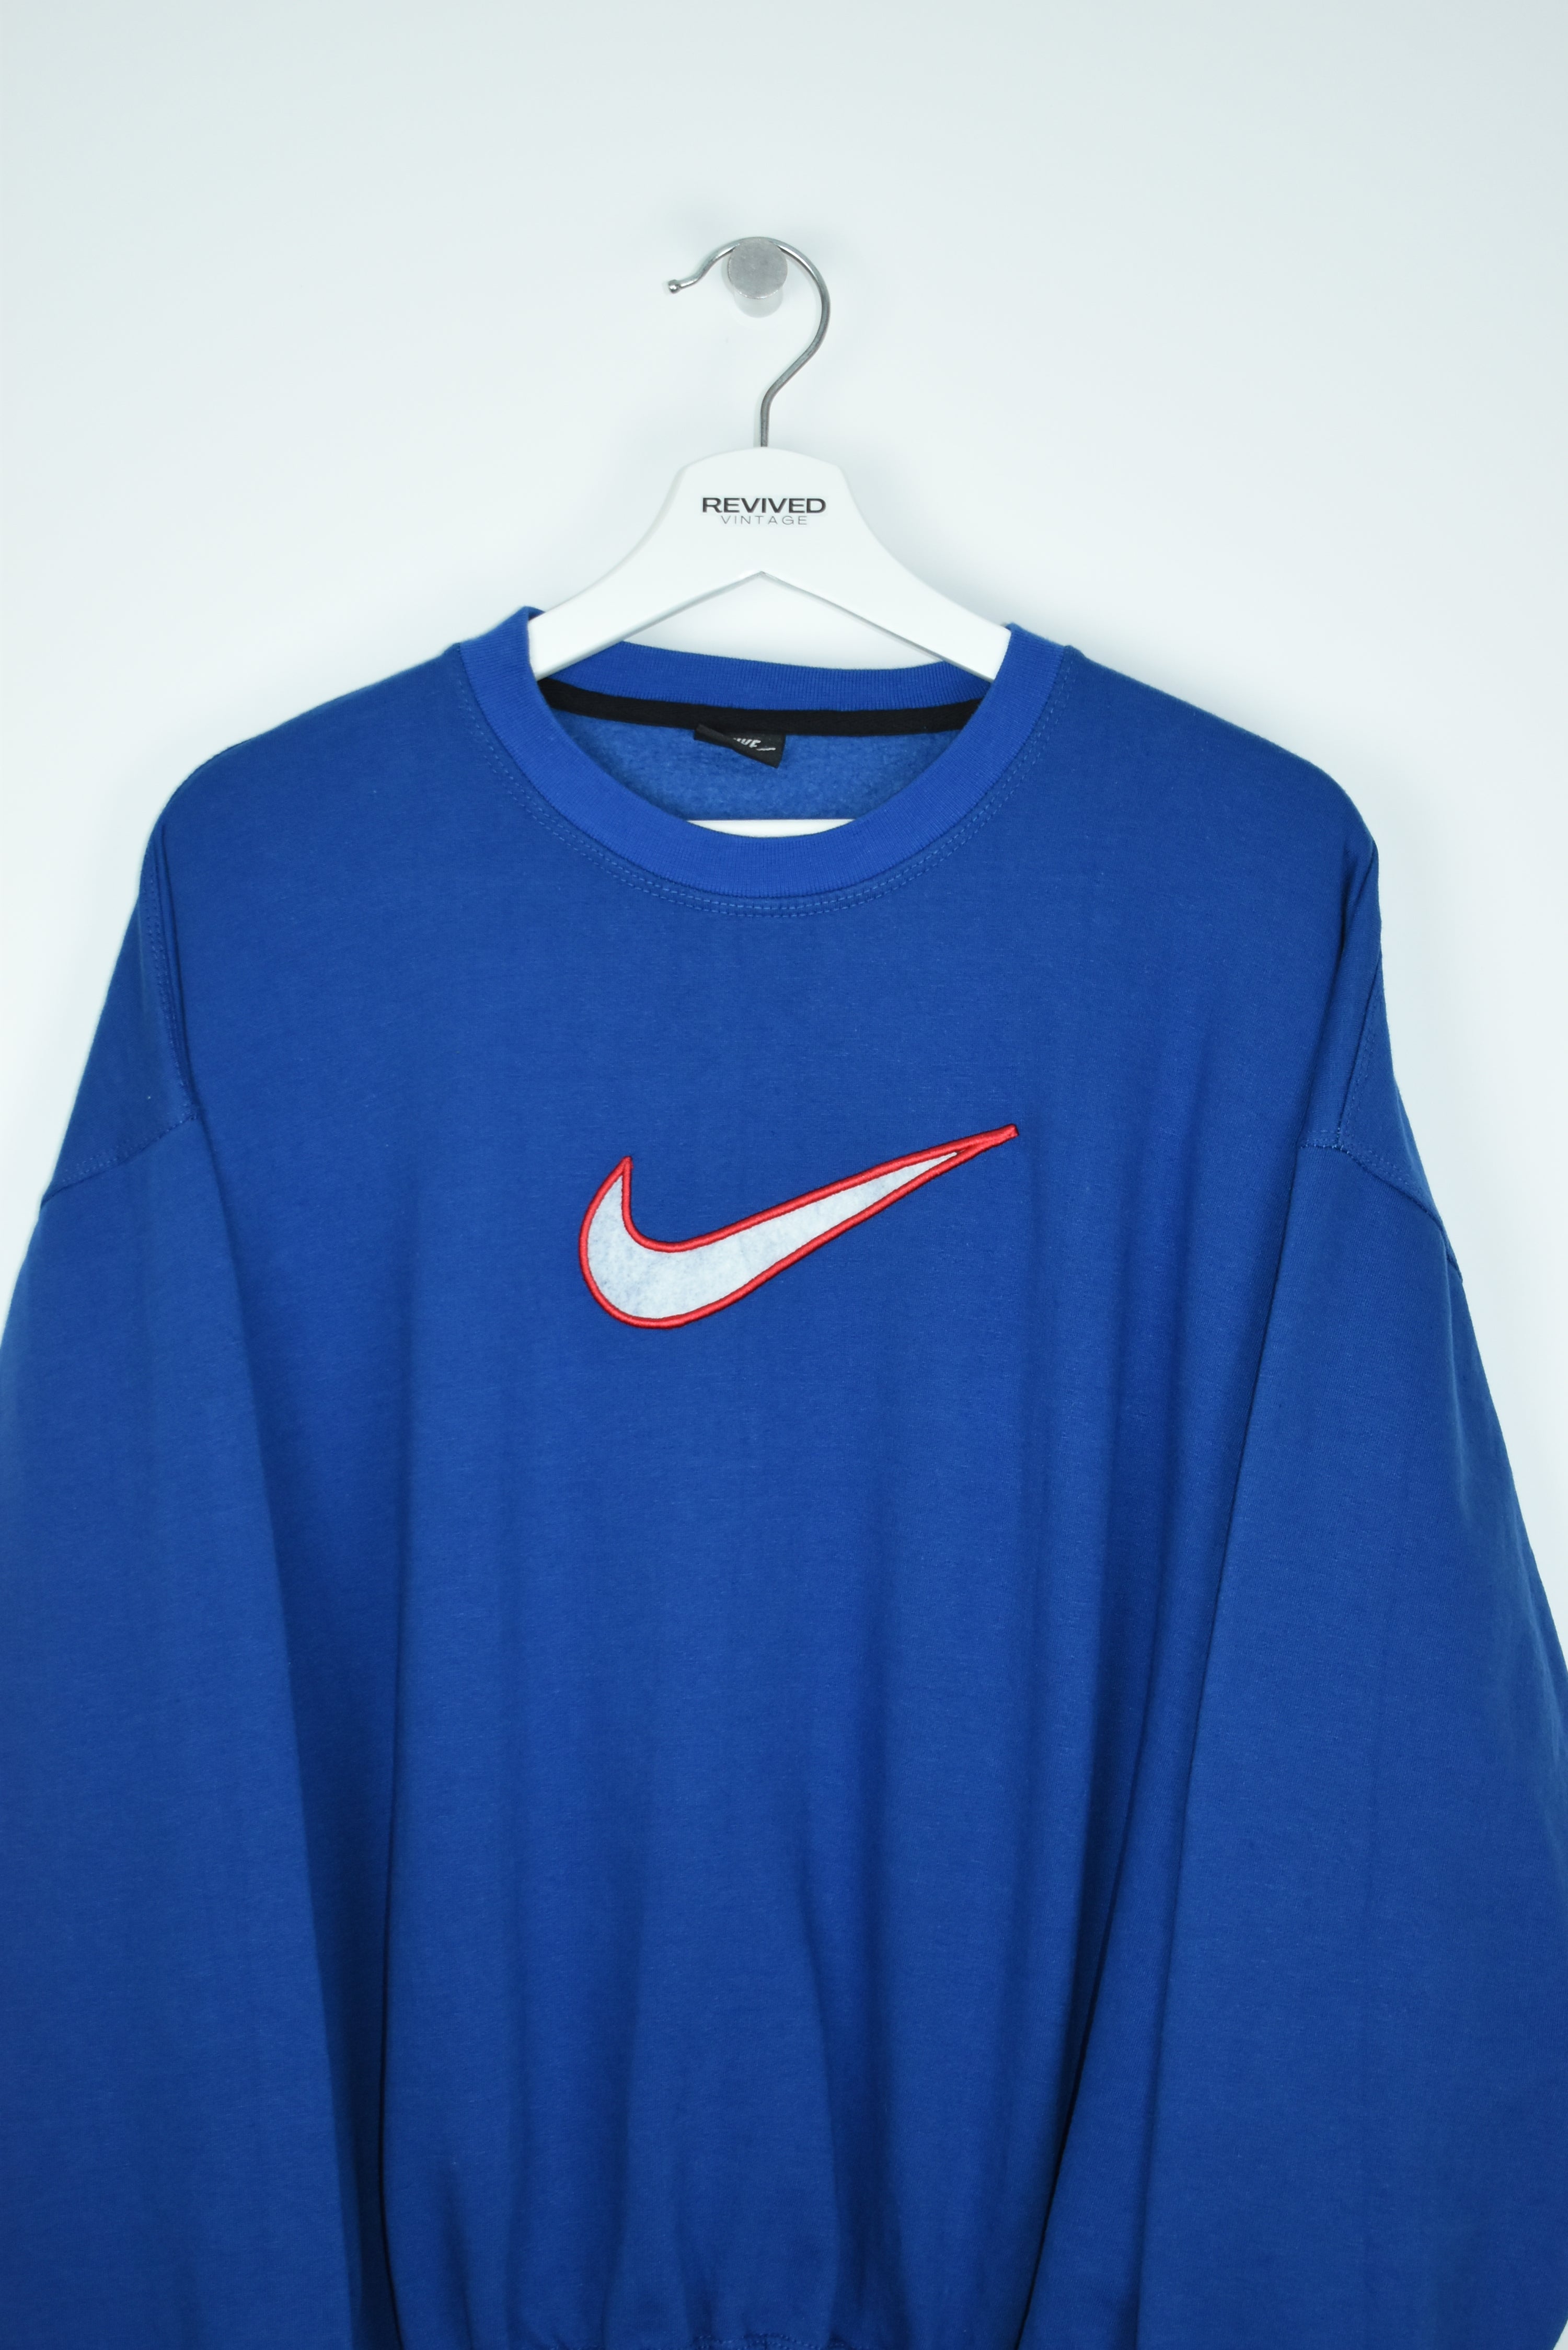 Vintage Nike Embroidered Swoosh Sweatshirt Blue Medium